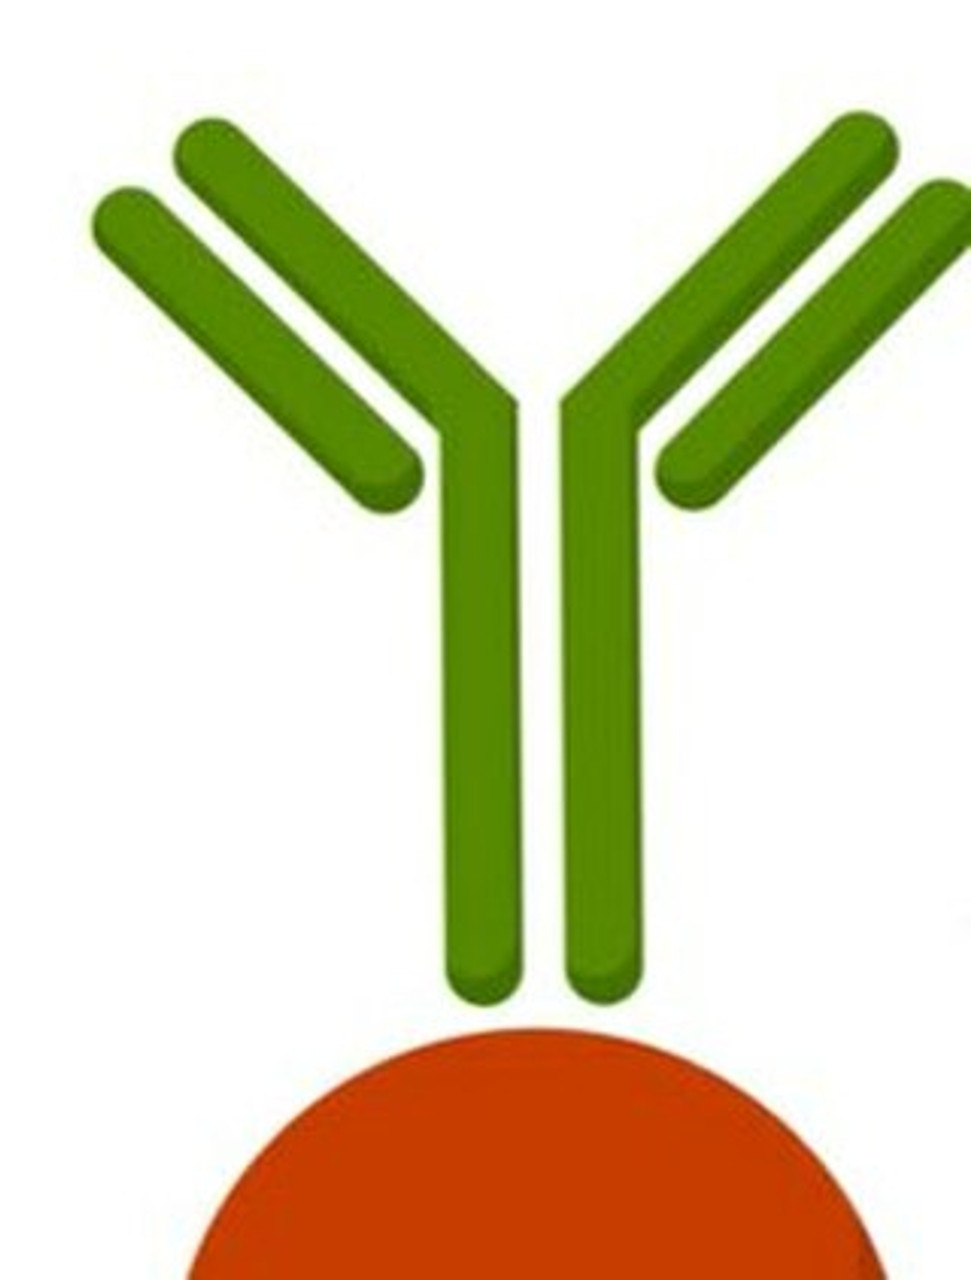 Anti-ARMC5 antibody